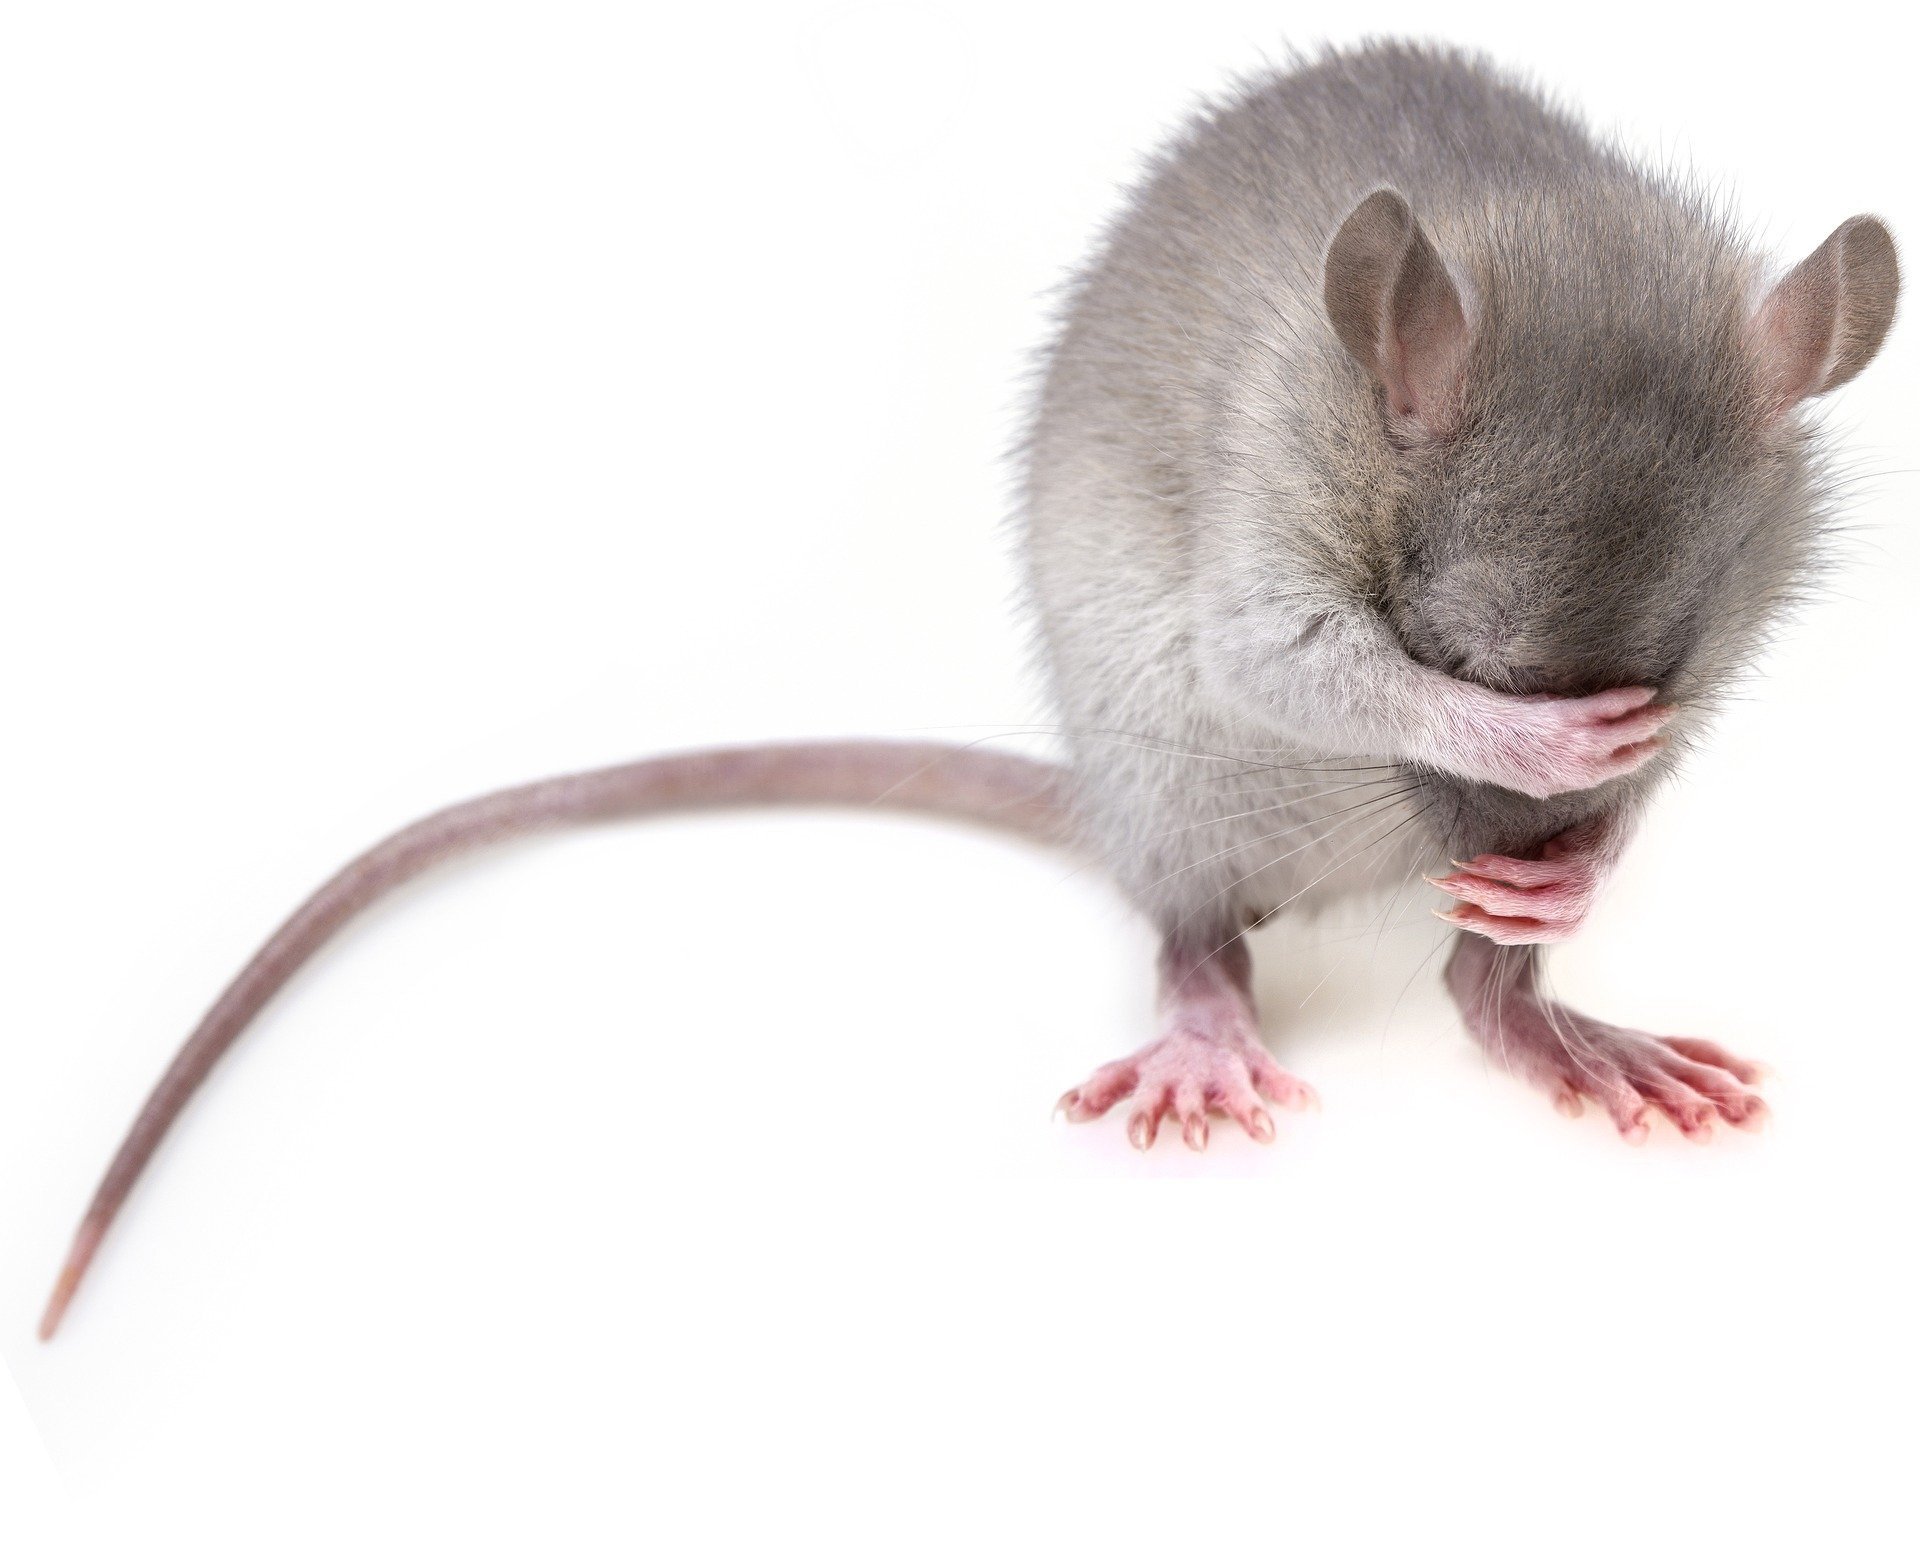 5 Daftar Penyakit Berbahaya Ketika Tikus Berhasil Masuk Ke Dalam Rumah